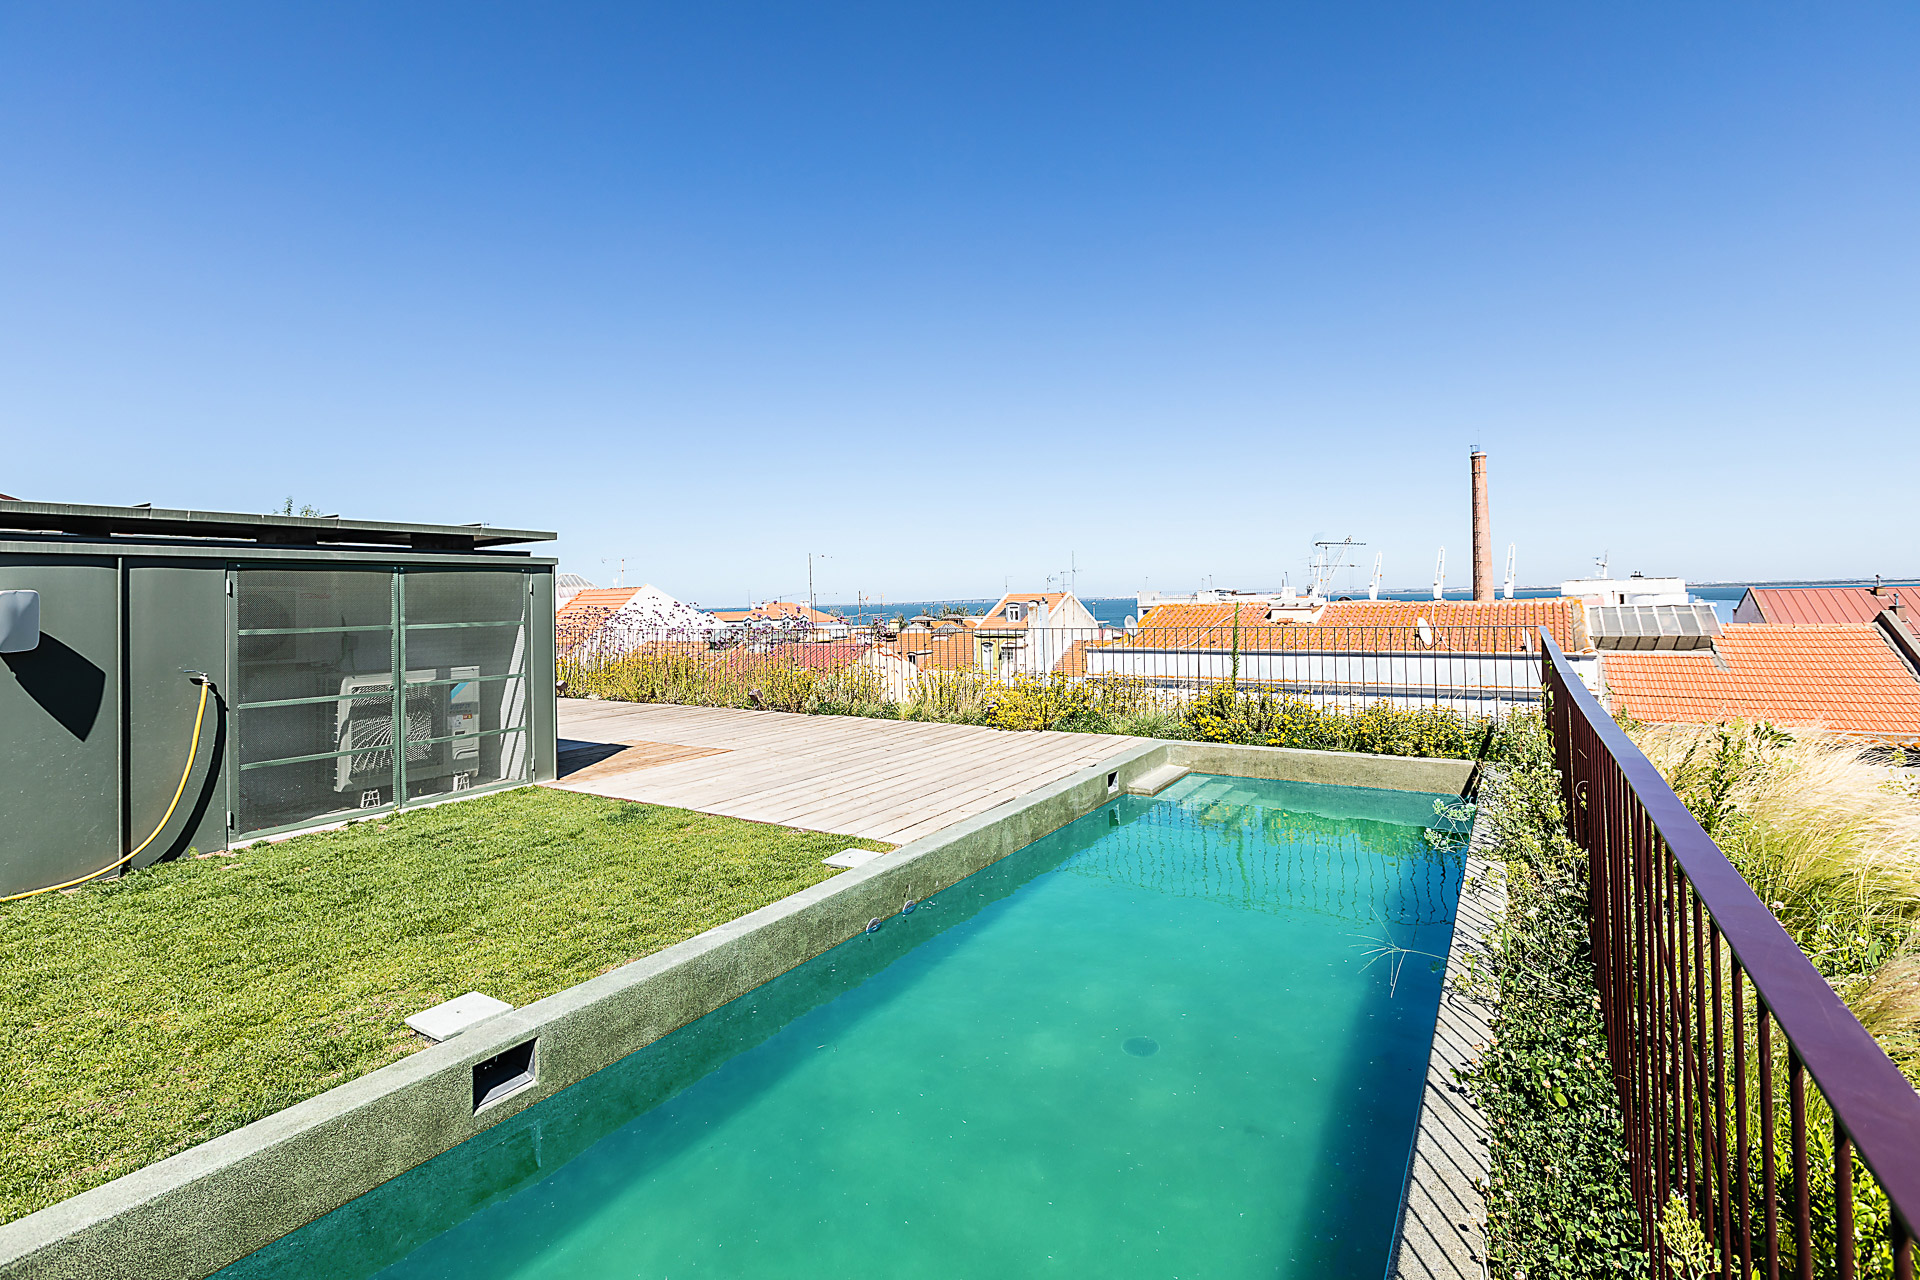 Fotografia de Arquitectura - Fotografia do topo de edificio de apartamentos com piscina